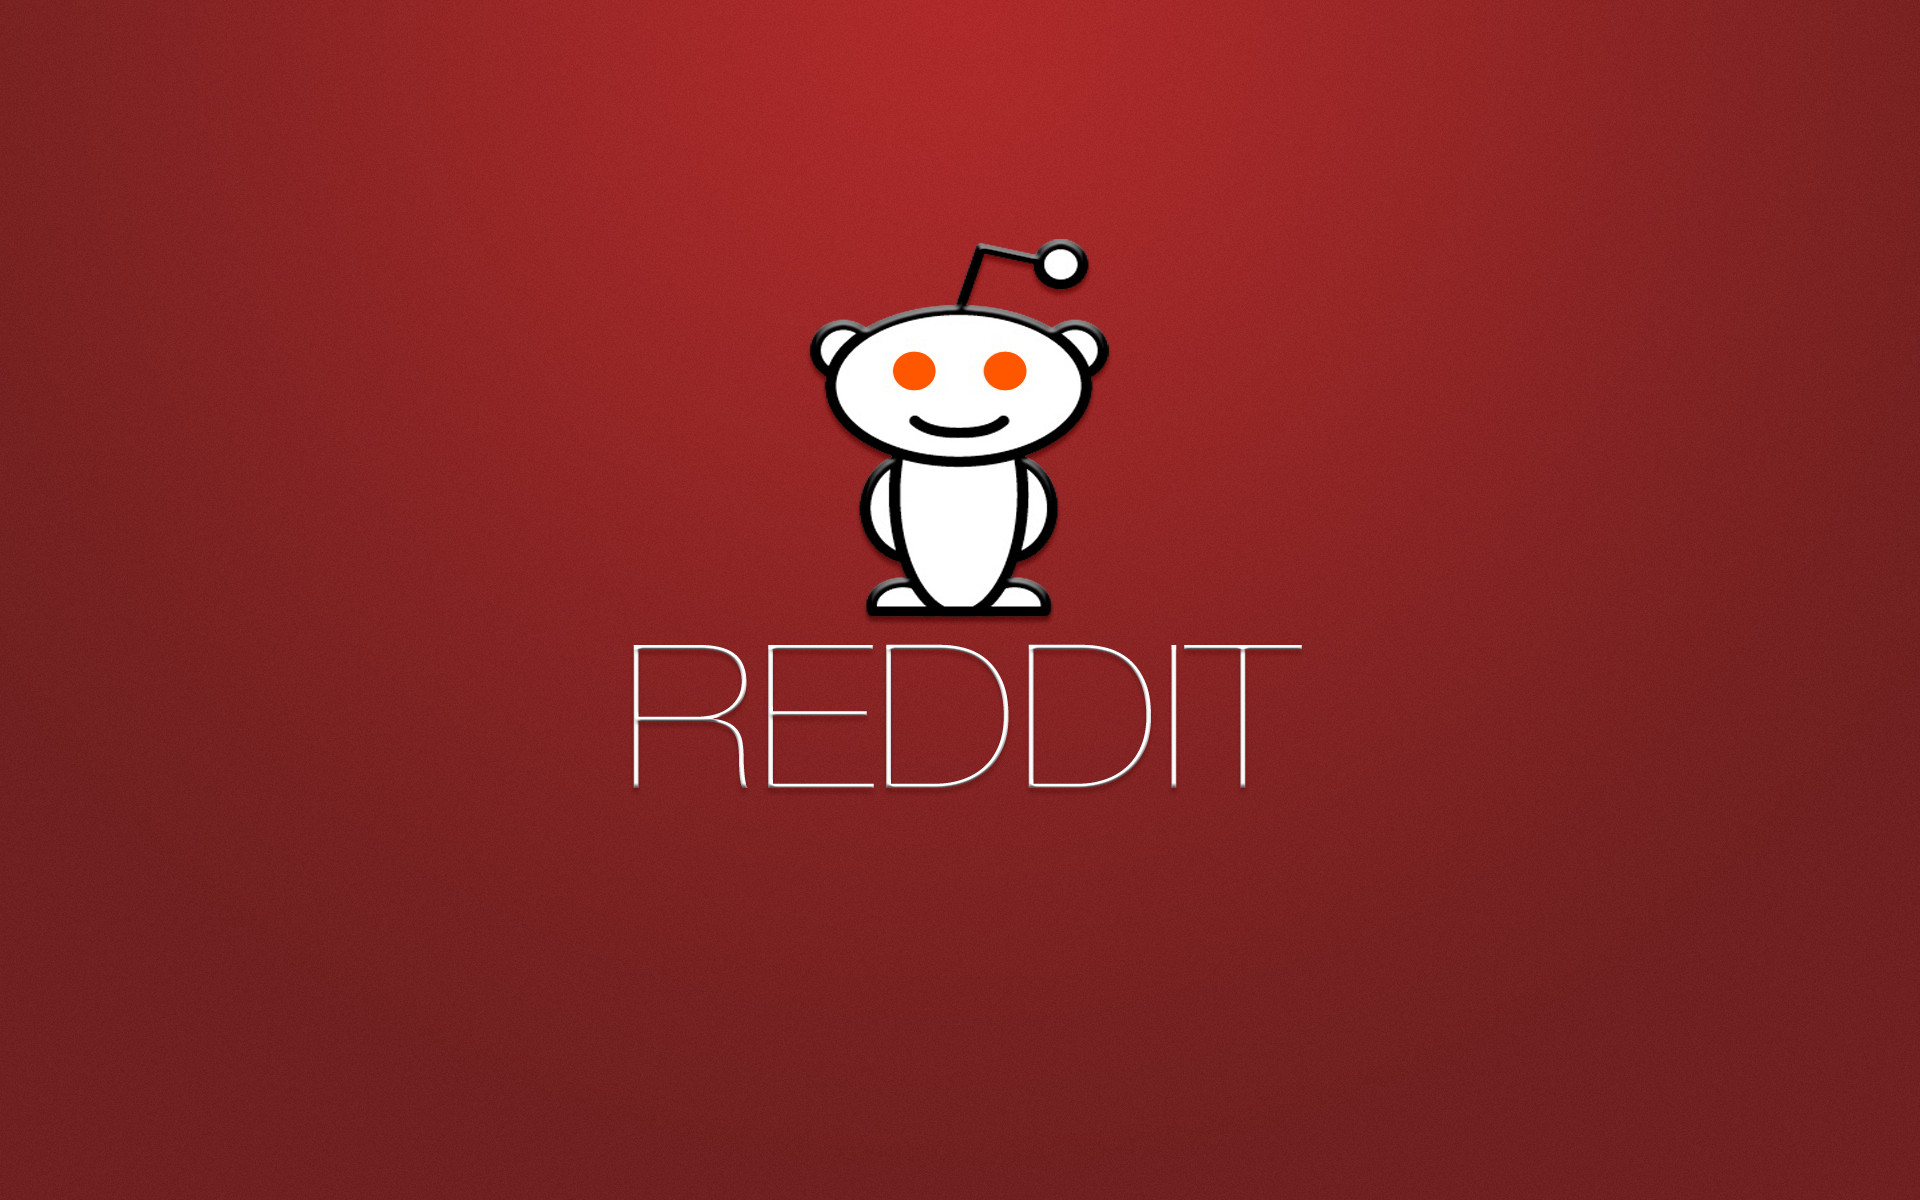  Reddit  Logo HD Logo 4k Wallpapers  Images Backgrounds 